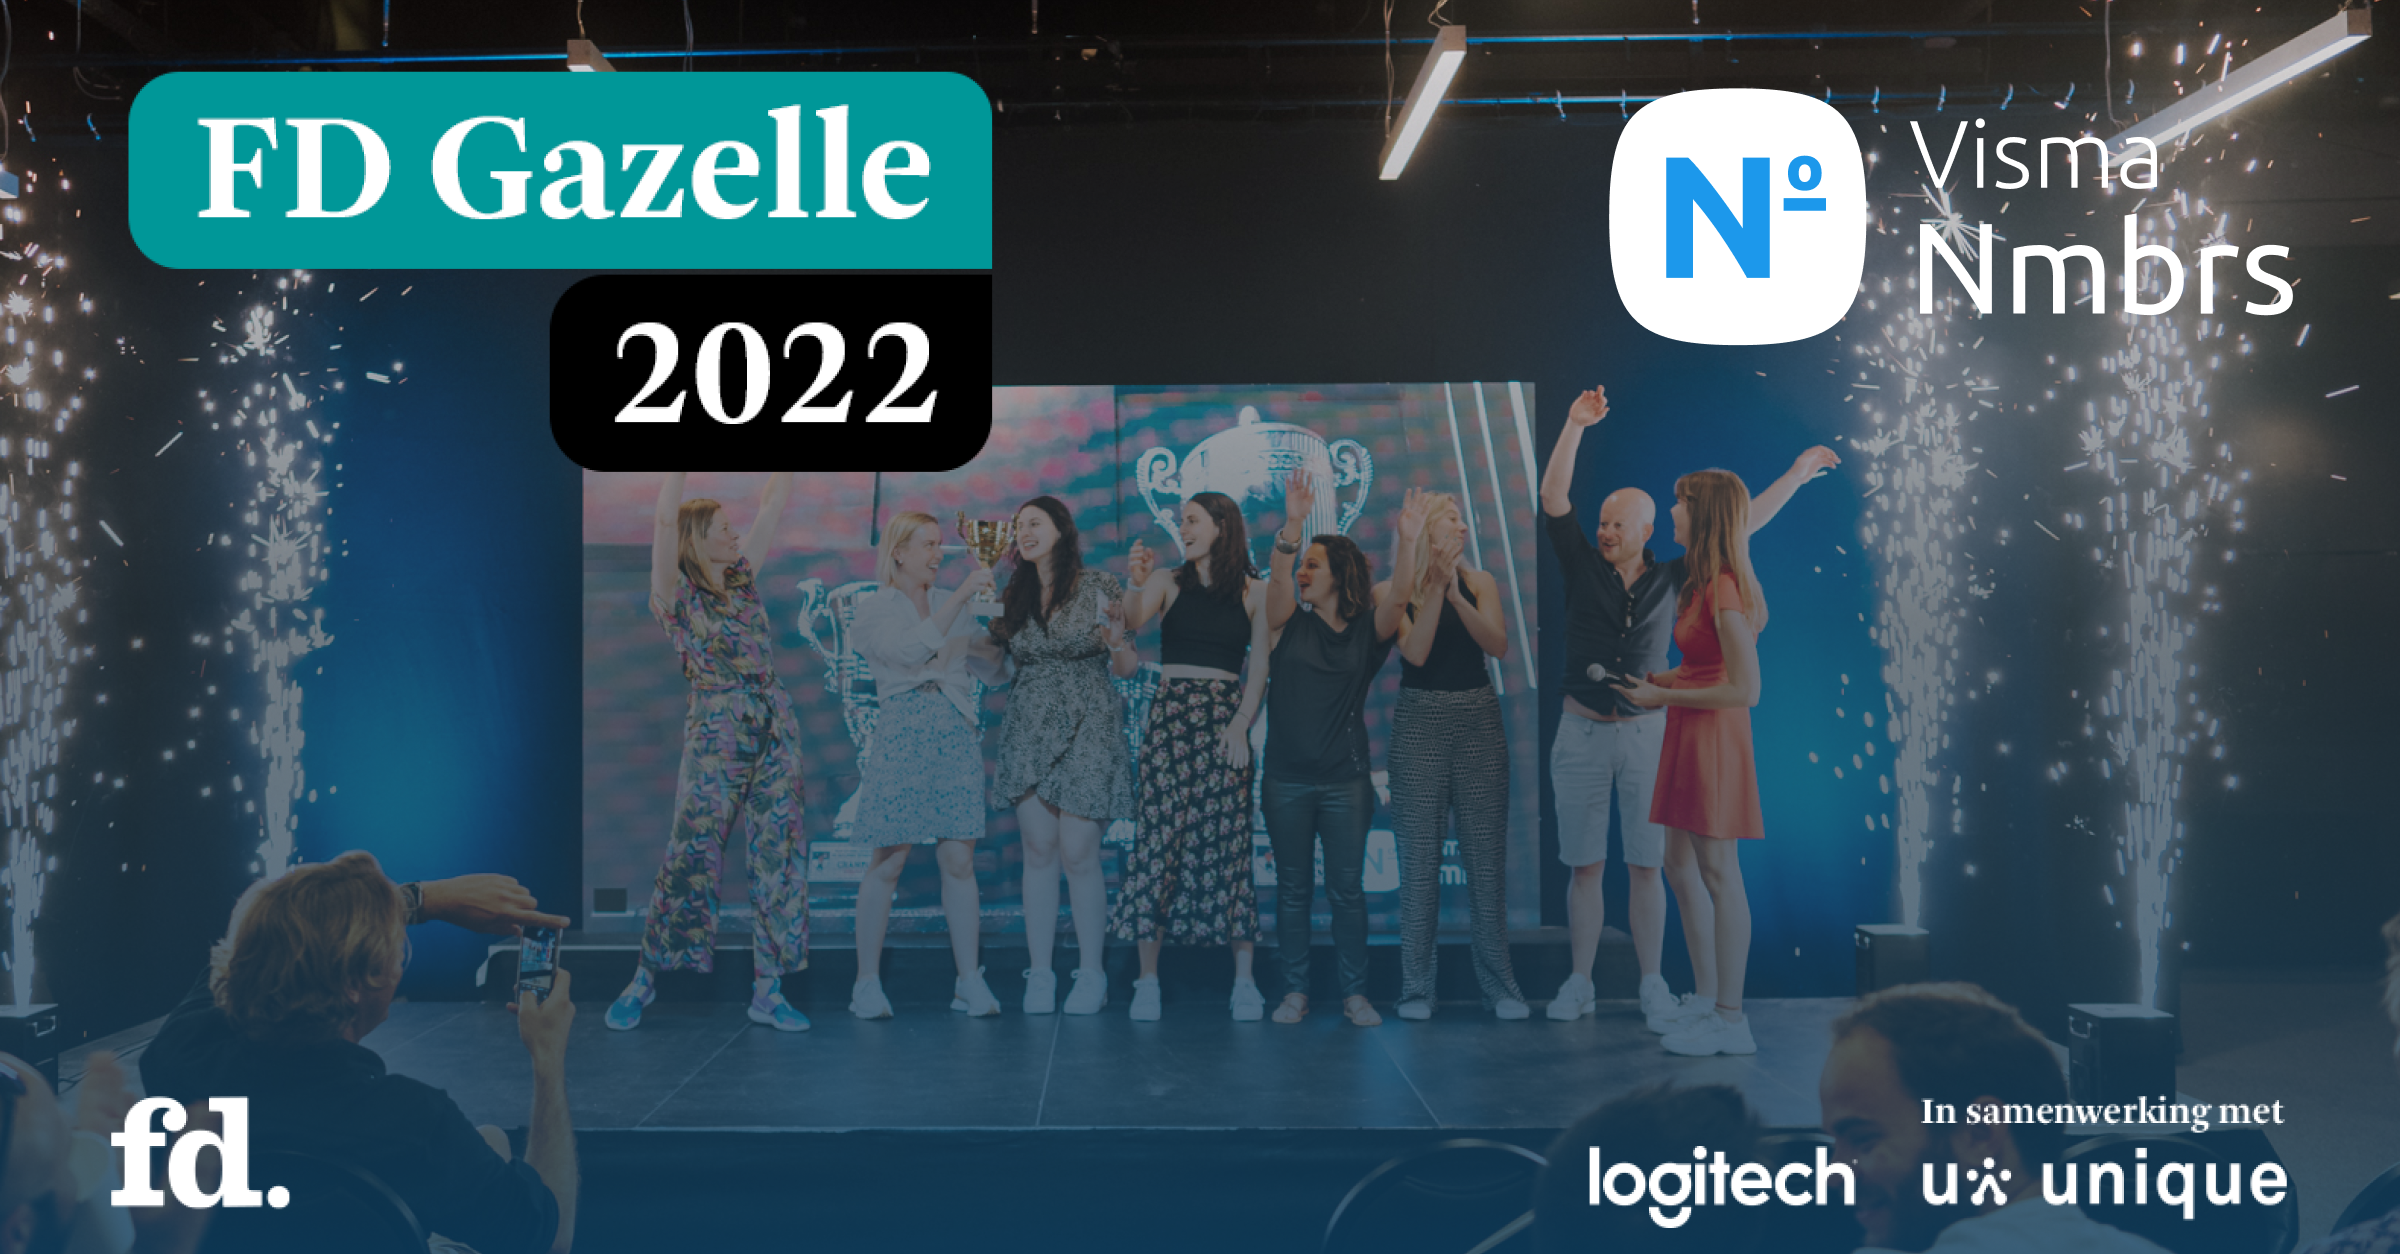 FD Gazelle 2022 - Visma Nmbrs